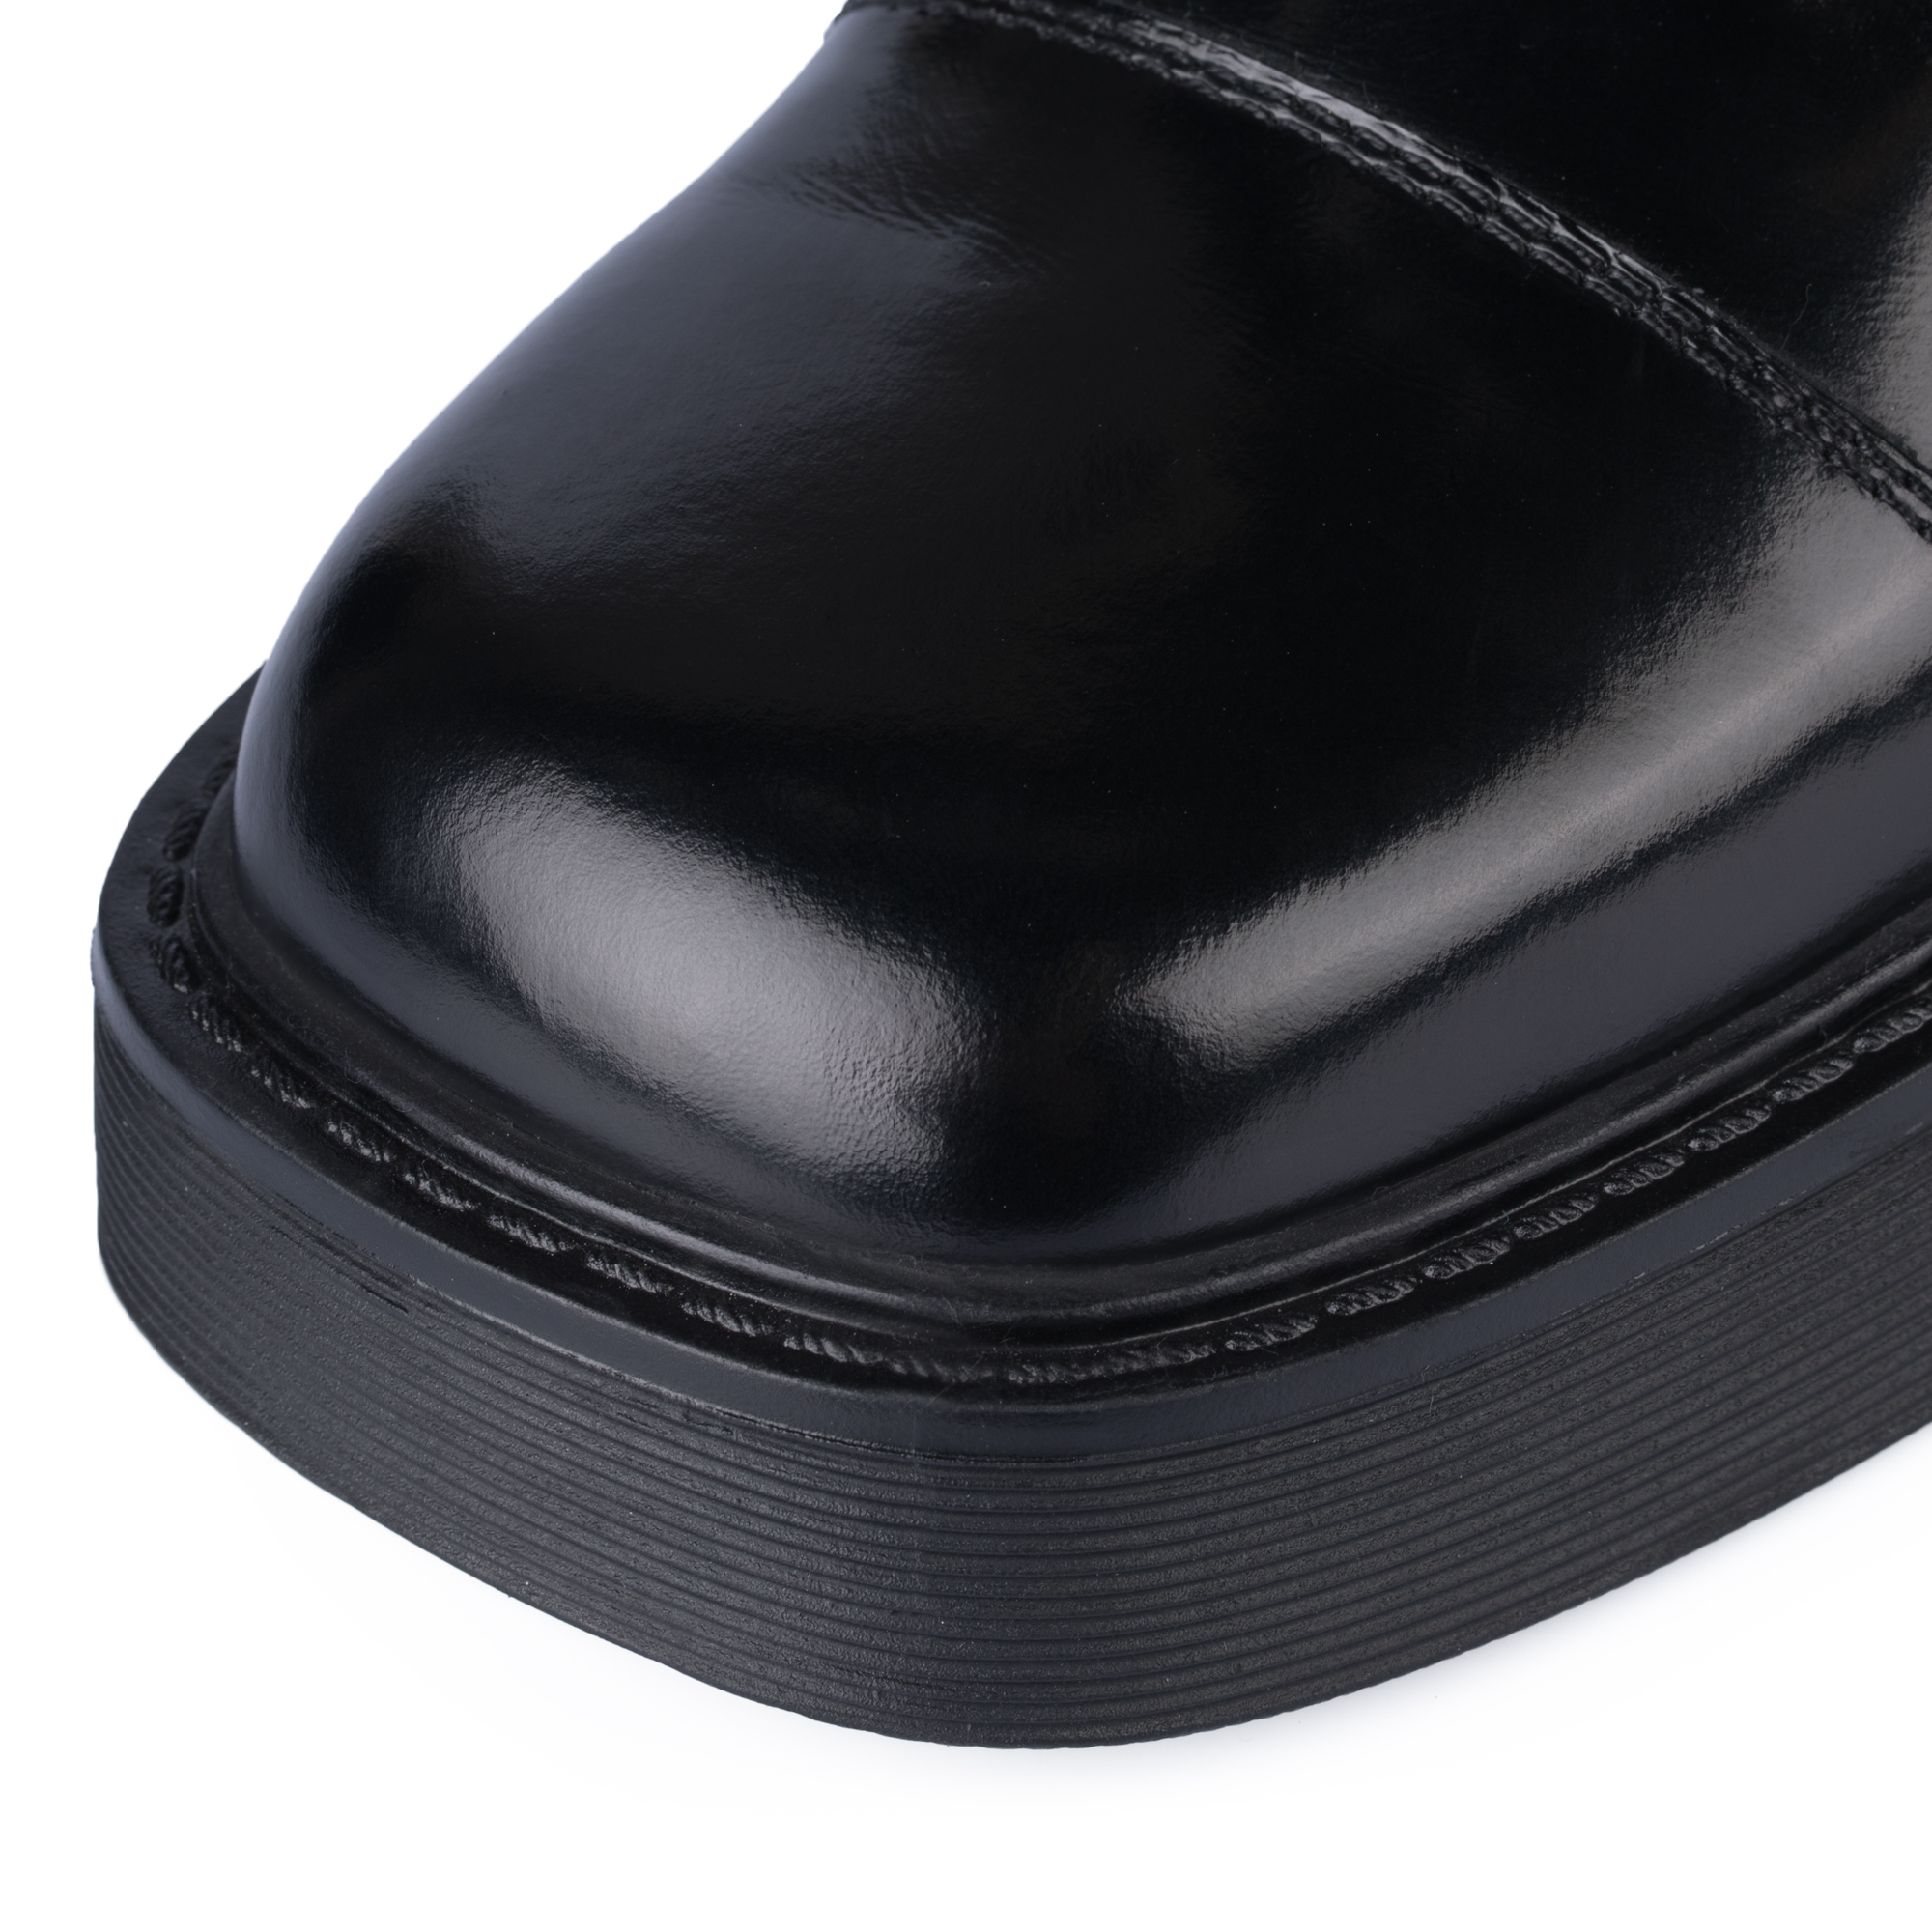 Ботинки Thomas Munz 126-400A-2102, цвет черный, размер 36 - фото 6